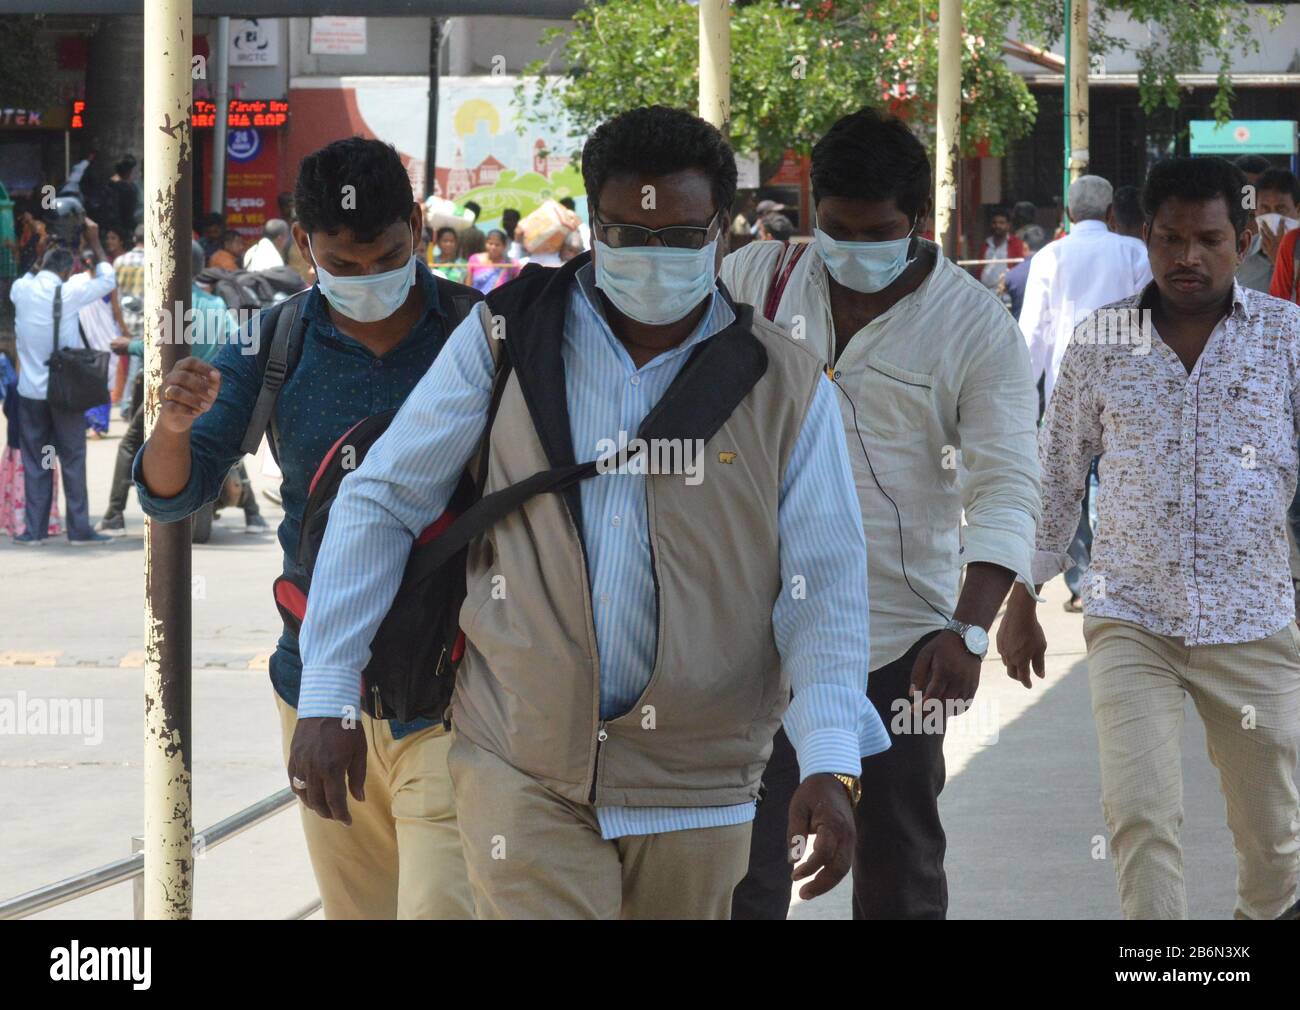 Bangalore, India. 11th Mar, 2020. Indiani che indossano maschere arrivano alla stazione ferroviaria di Bangalore, India, 11 marzo 2020. Il numero di casi di infezione da COVID-19 in India è salito a 60, i funzionari del ministero federale della salute dell'India ha detto Mercoledì. Credit: Str/Xinhua/Alamy Live News Foto Stock